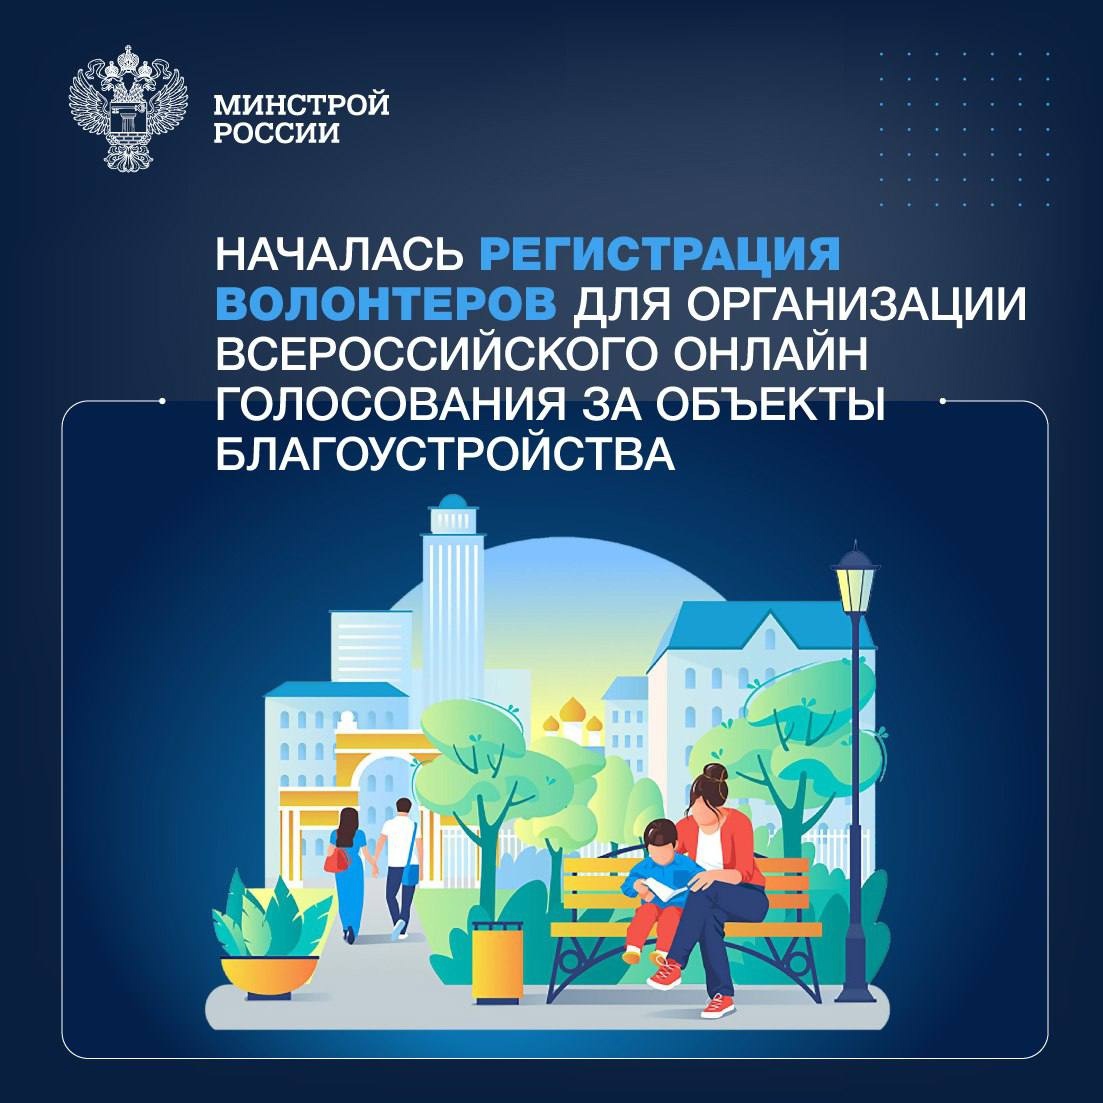 Открыта регистрация волонтеров Всероссийского онлайн голосования за объекты благоустройства.